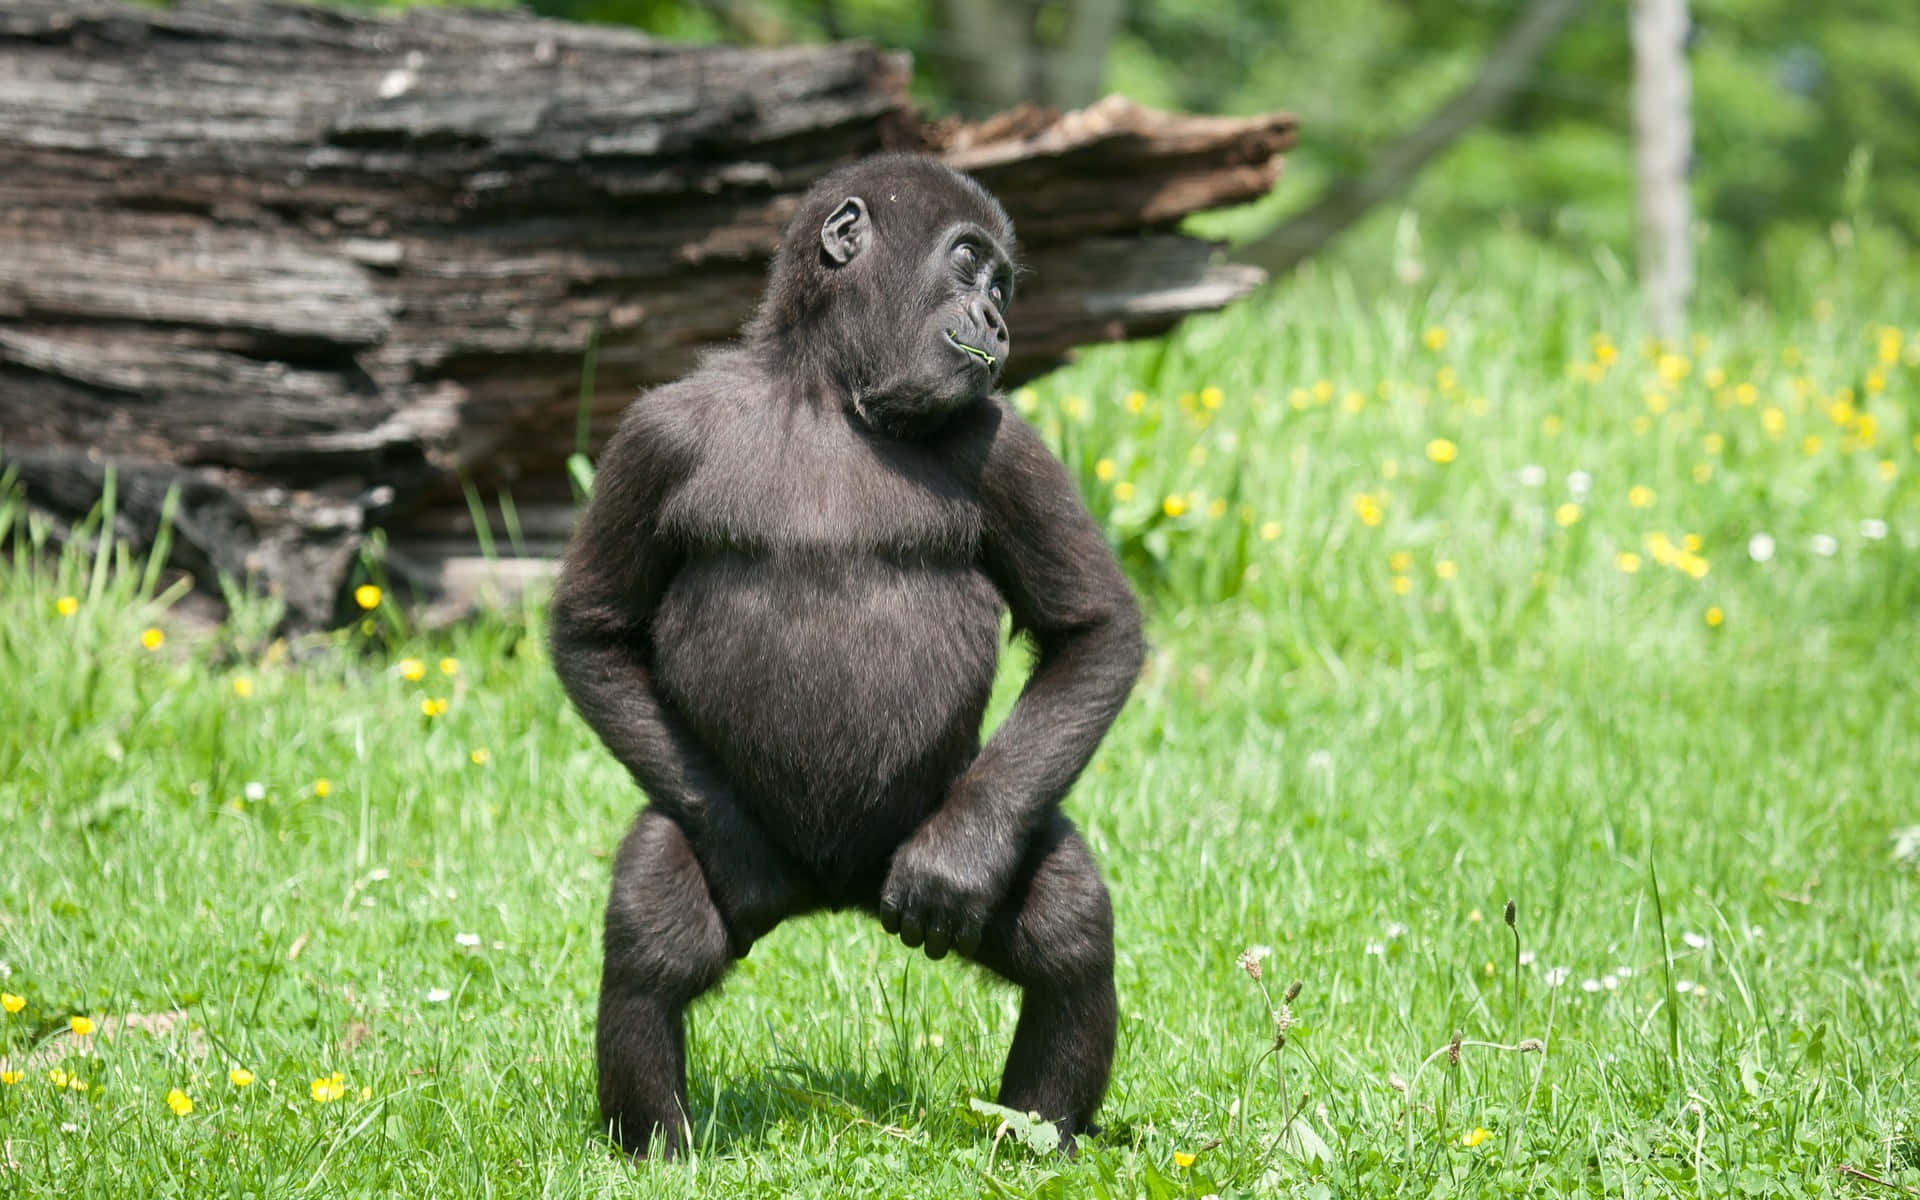 Cute Gorilla Dancing Wallpaper